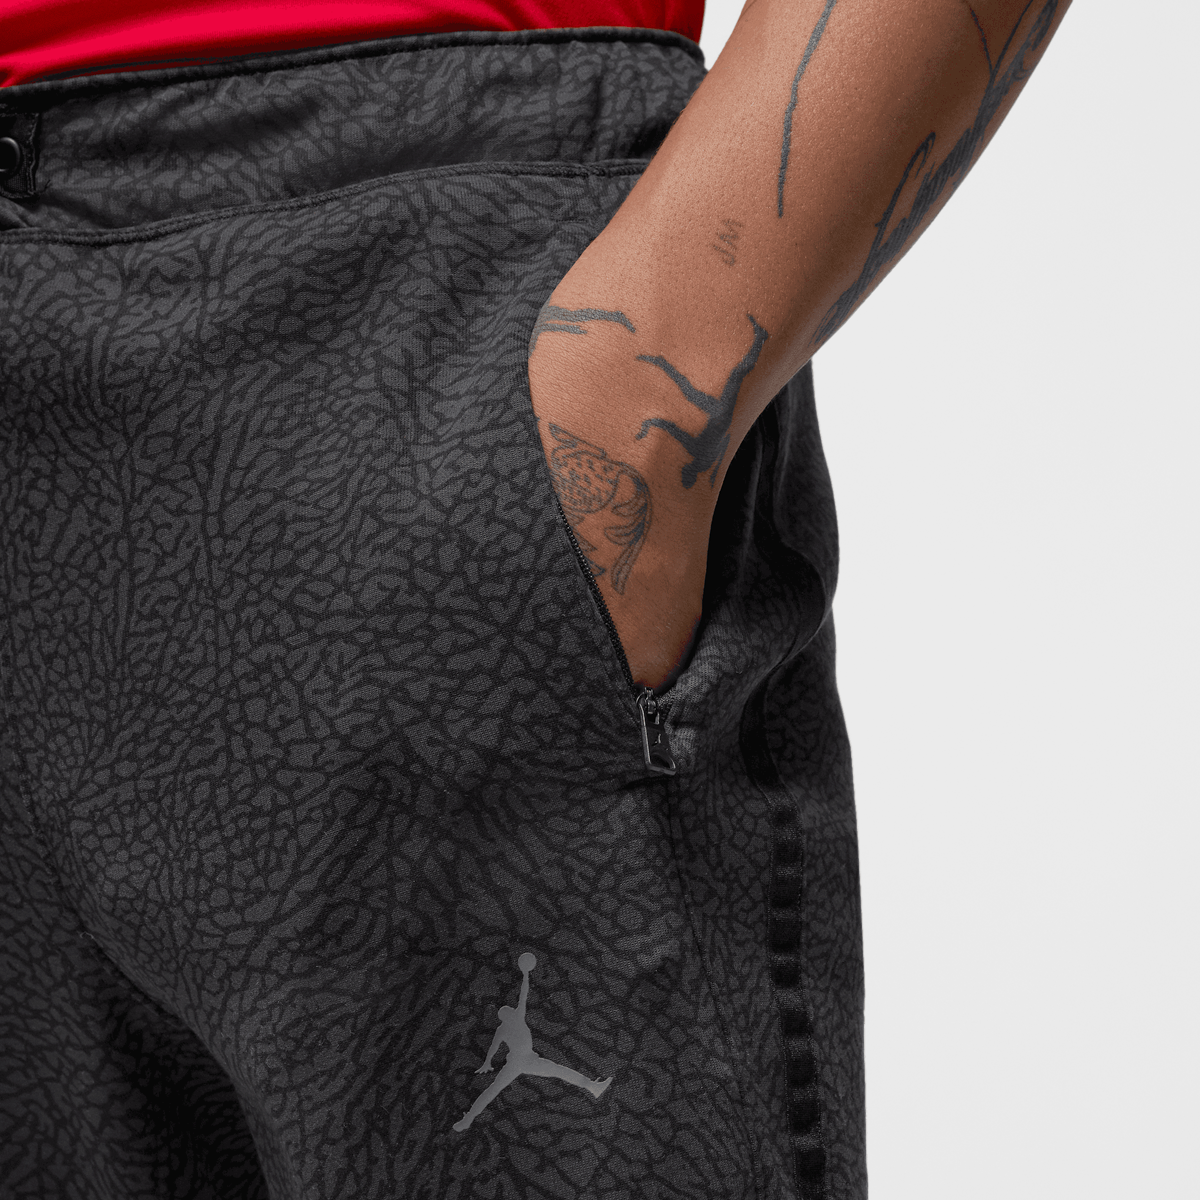 Jordan Dri-fit Sport Air Pants Trainingsbroeken Heren black dark shadow dark grey maat: S beschikbare maaten:S M L XL